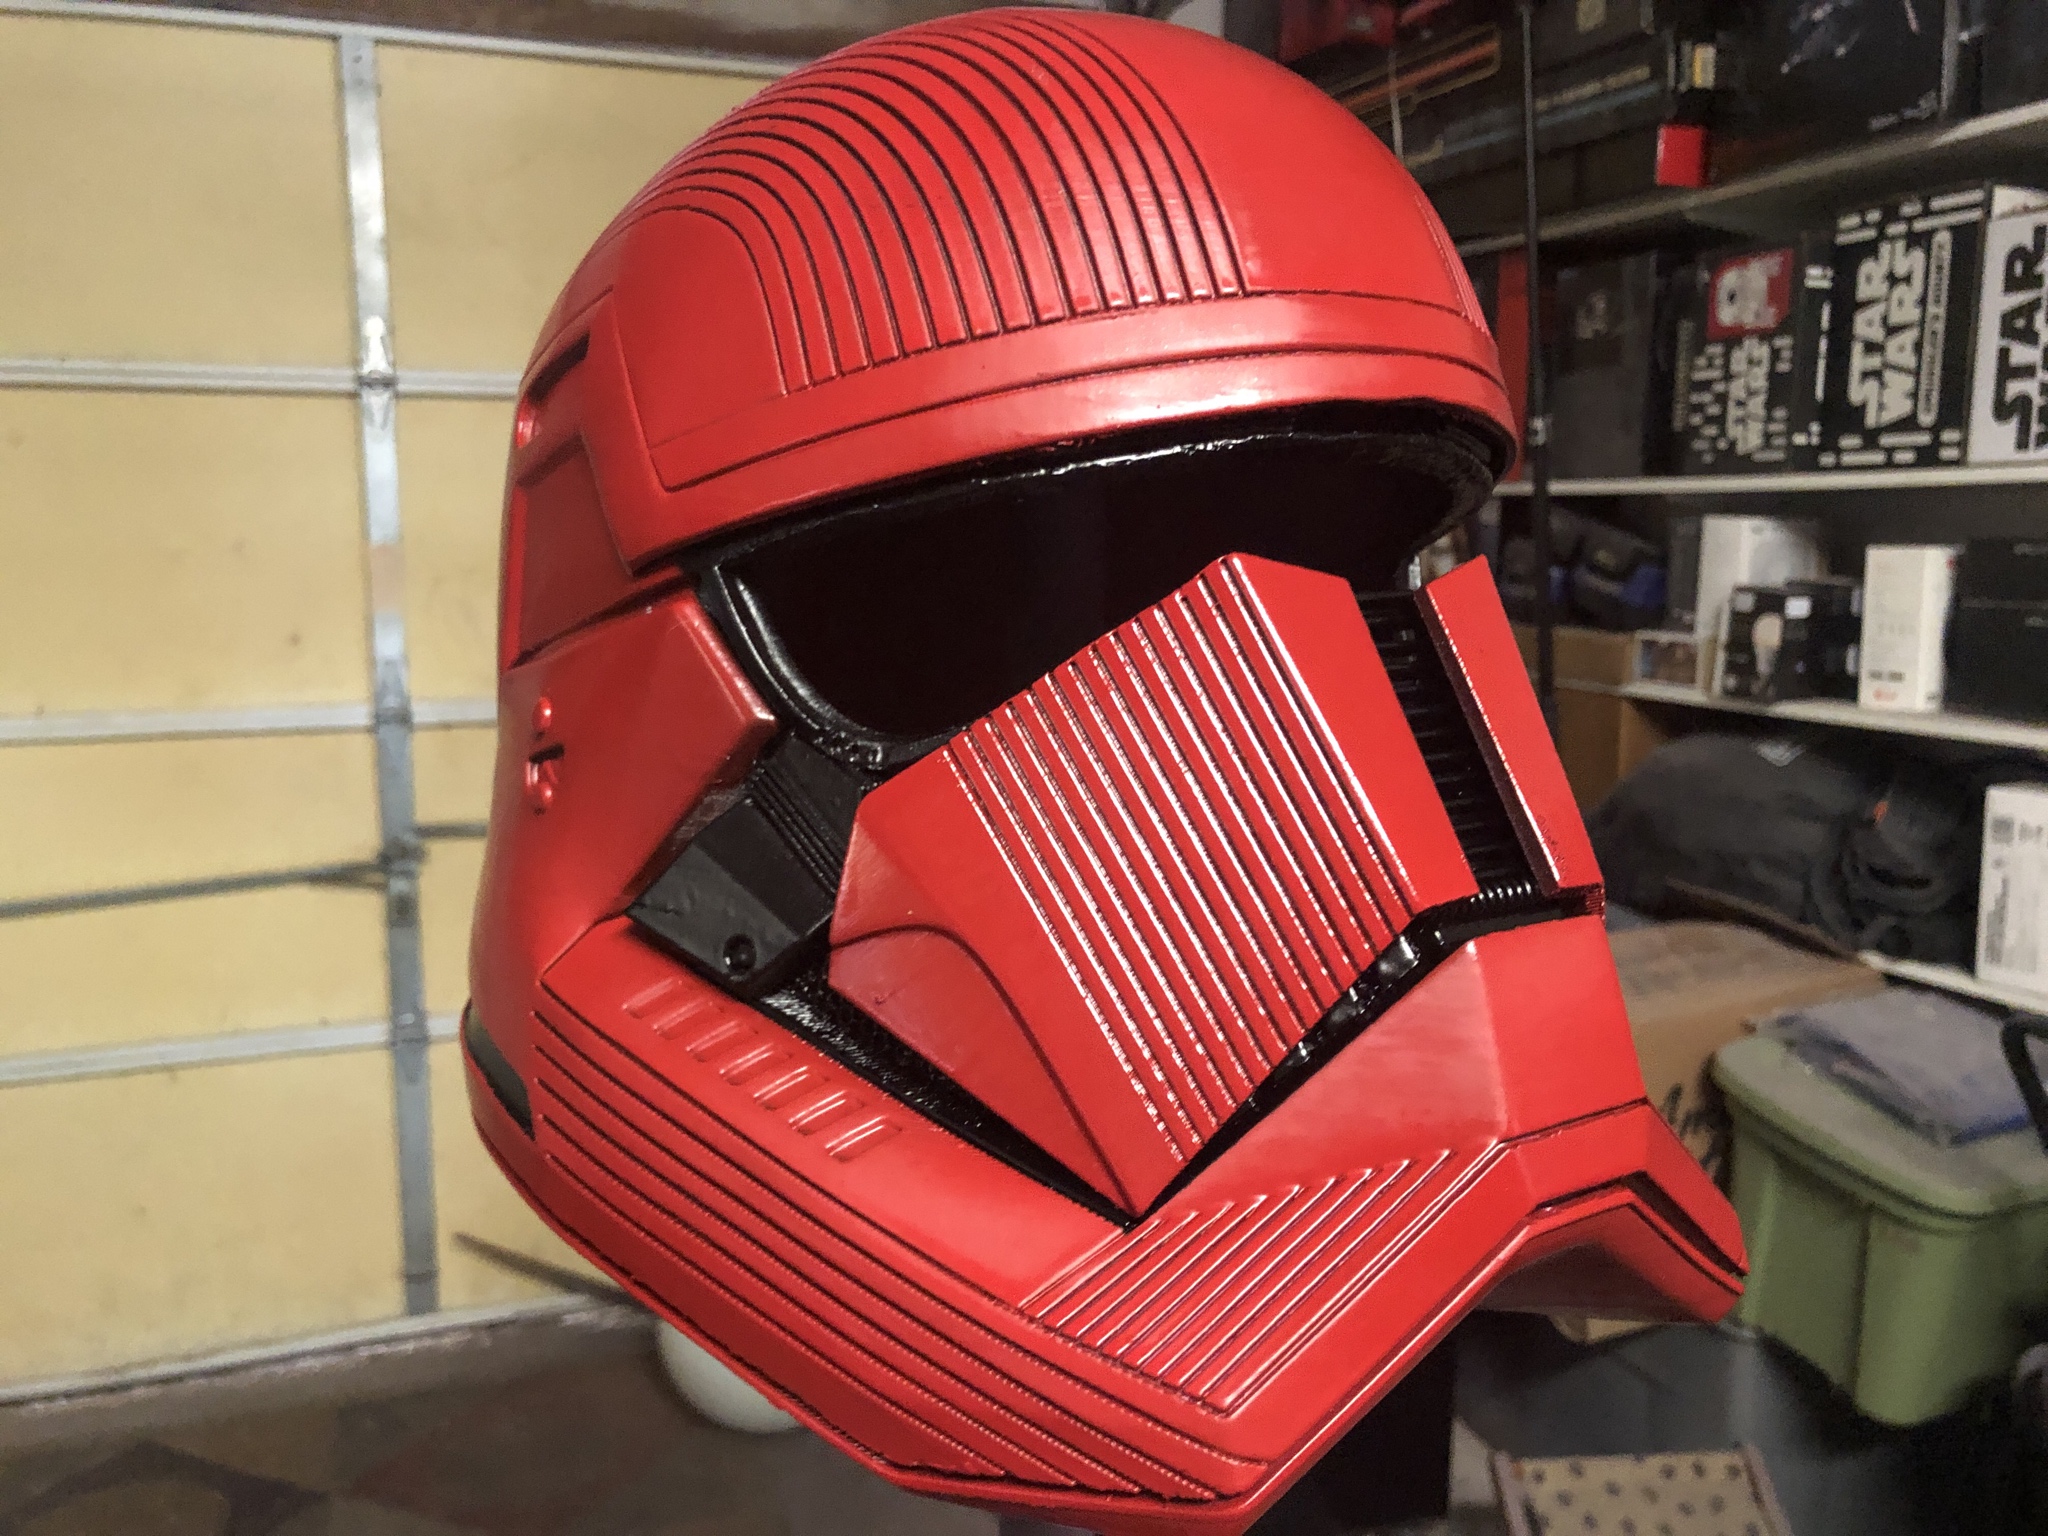 3D Printed Sith trooper helmet from Rise of Skywalker